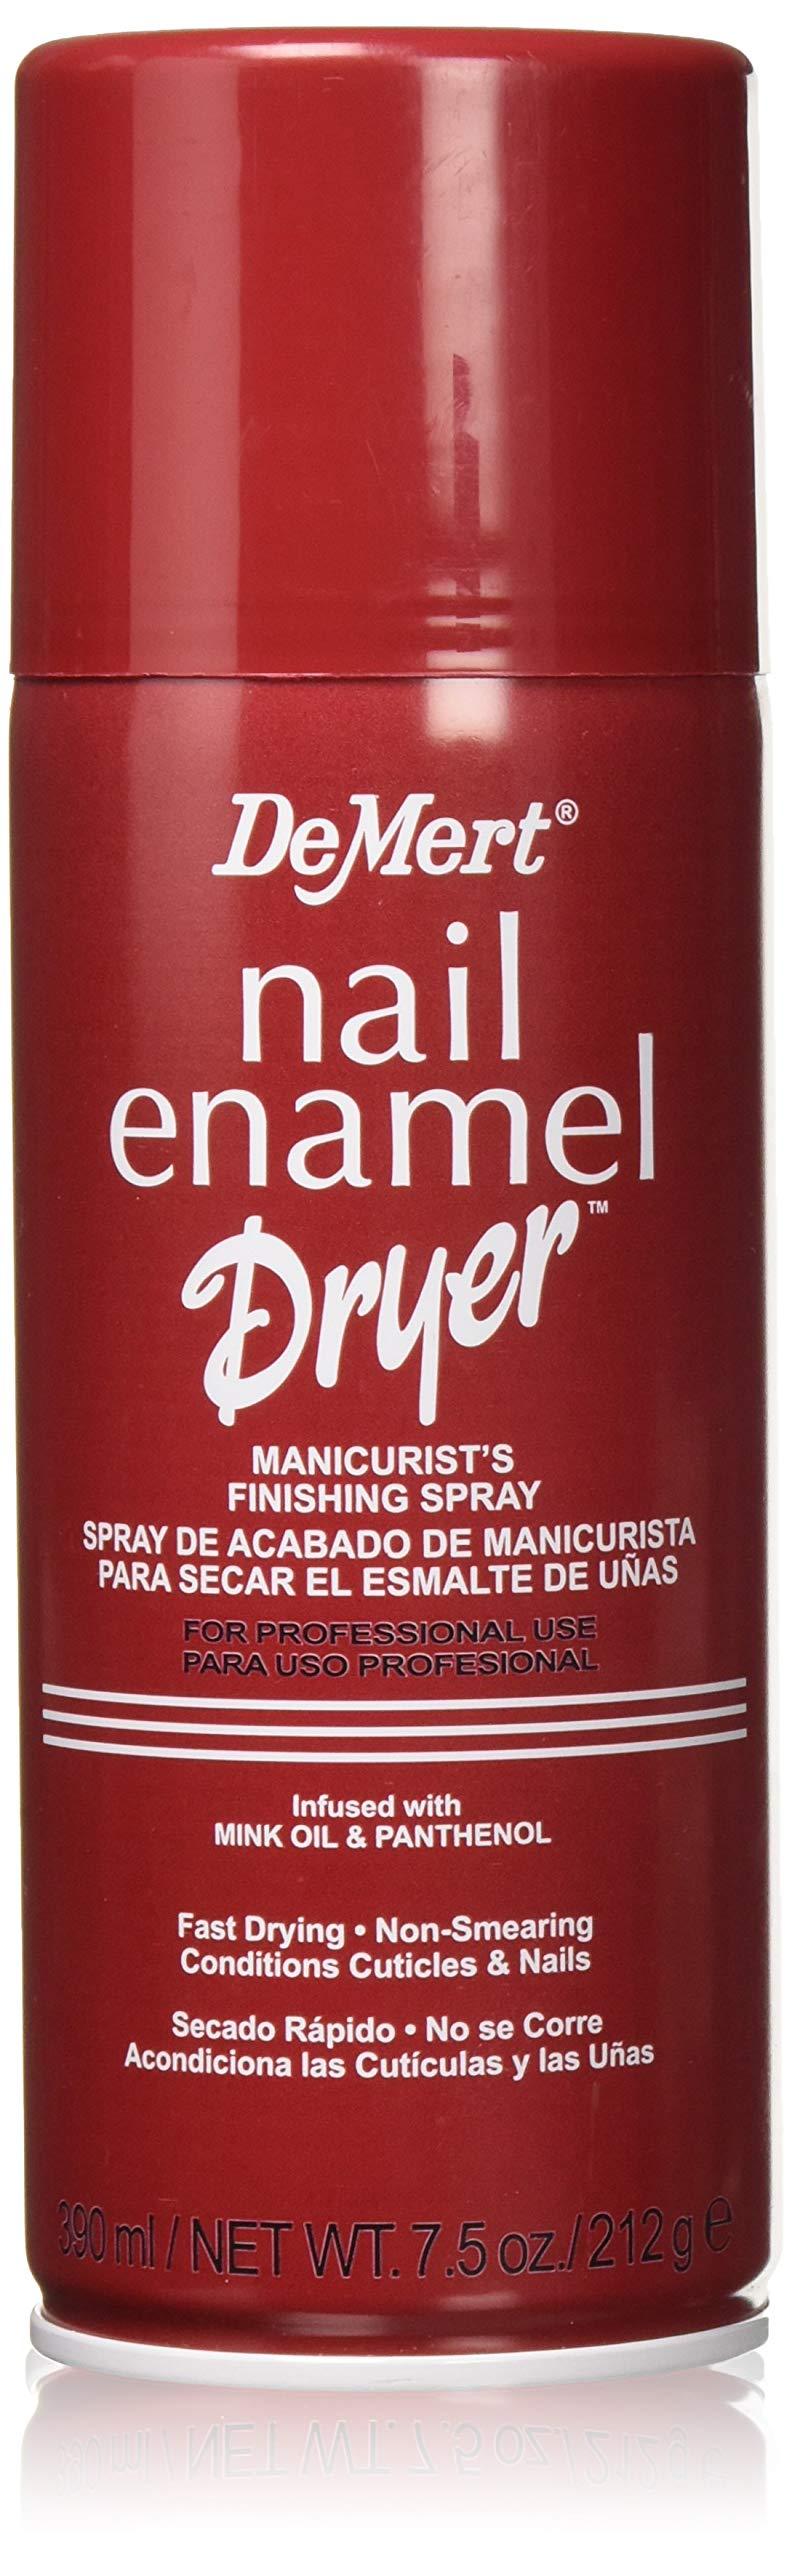 Demert Nail Enamel Dryer-7.5 oz 1-Pack - BeesActive Australia